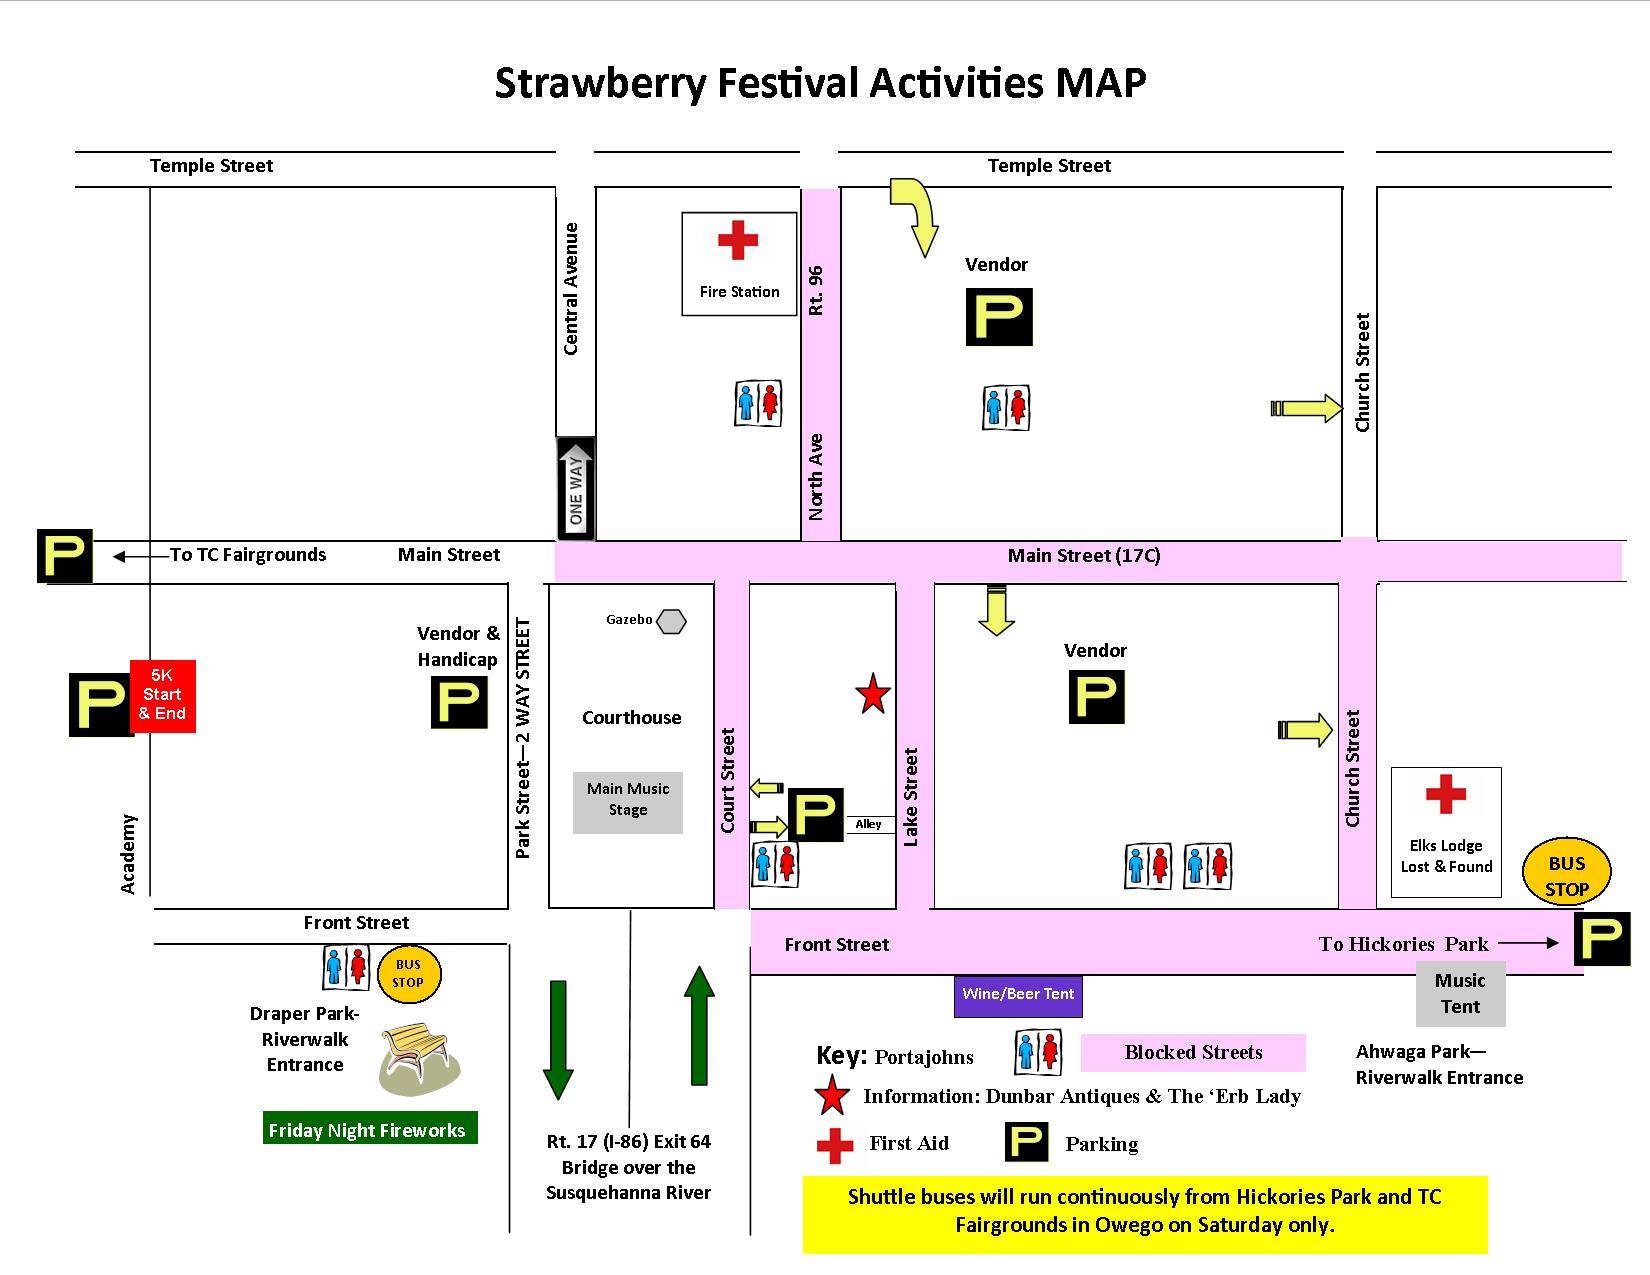 Strawberry Festival Map; Owego, N.Y., June 19-20